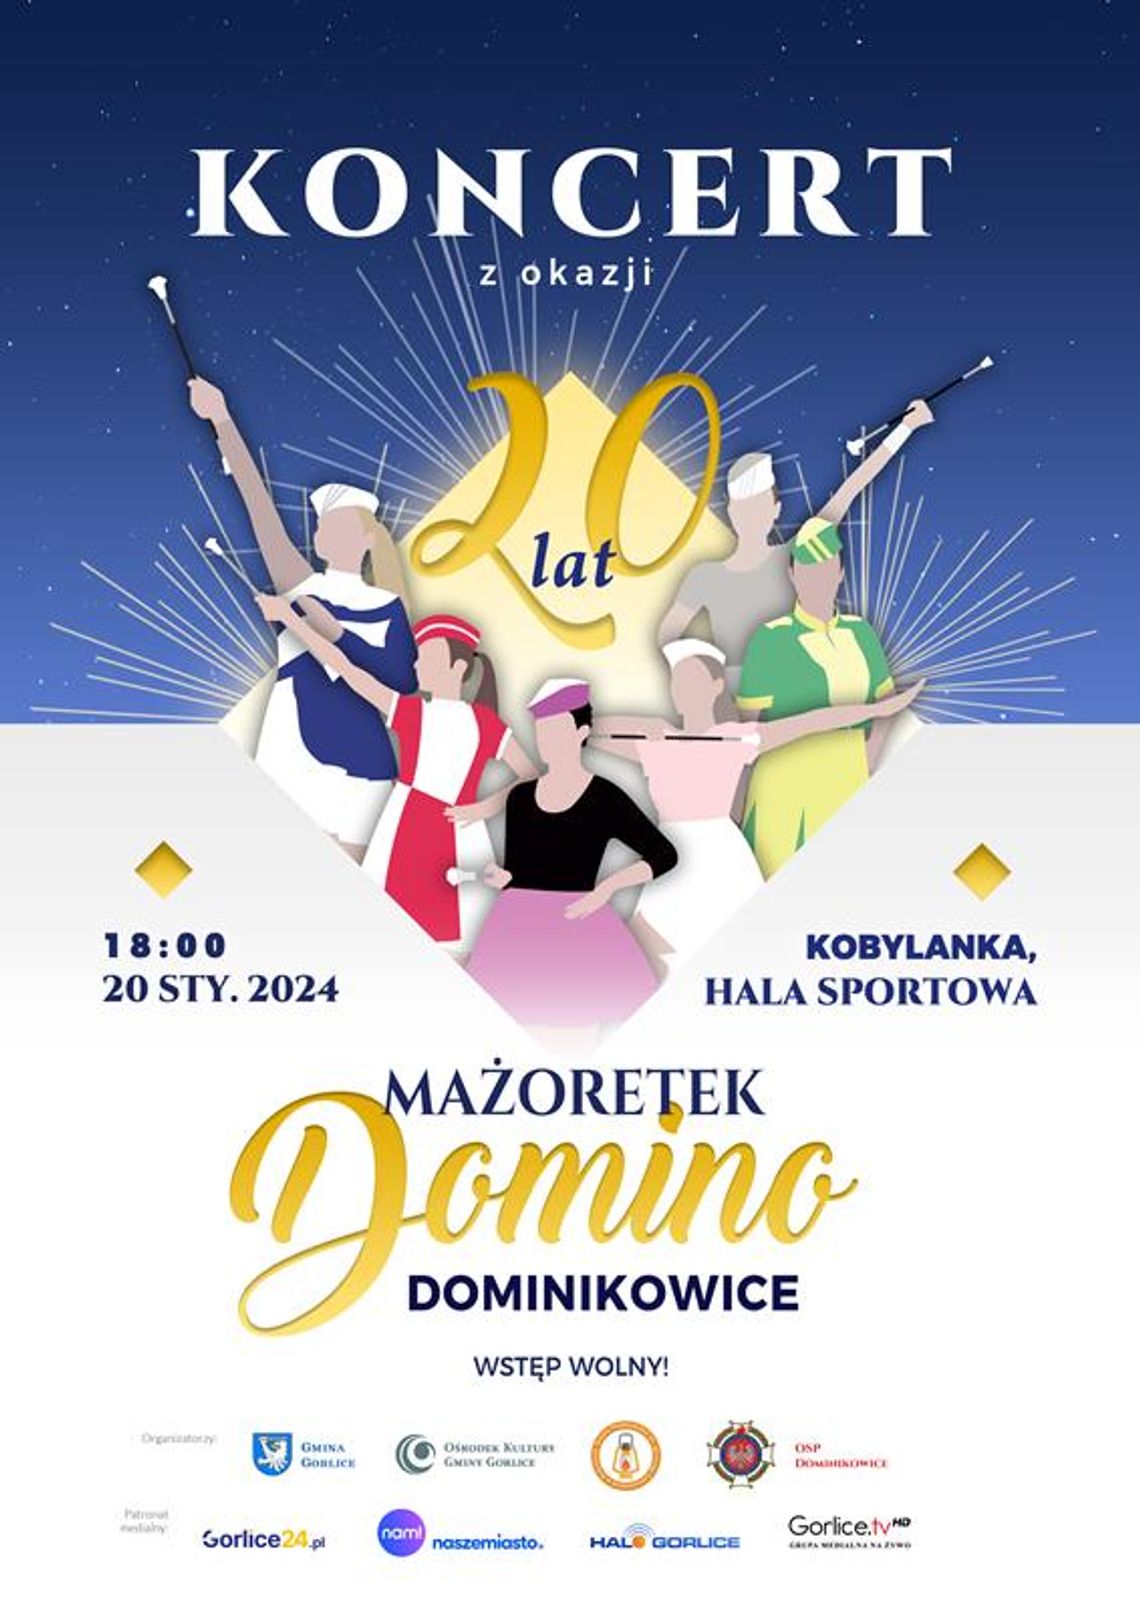 Koncert z okazji 20 lat Mażoretek Domino | halogorlice.info